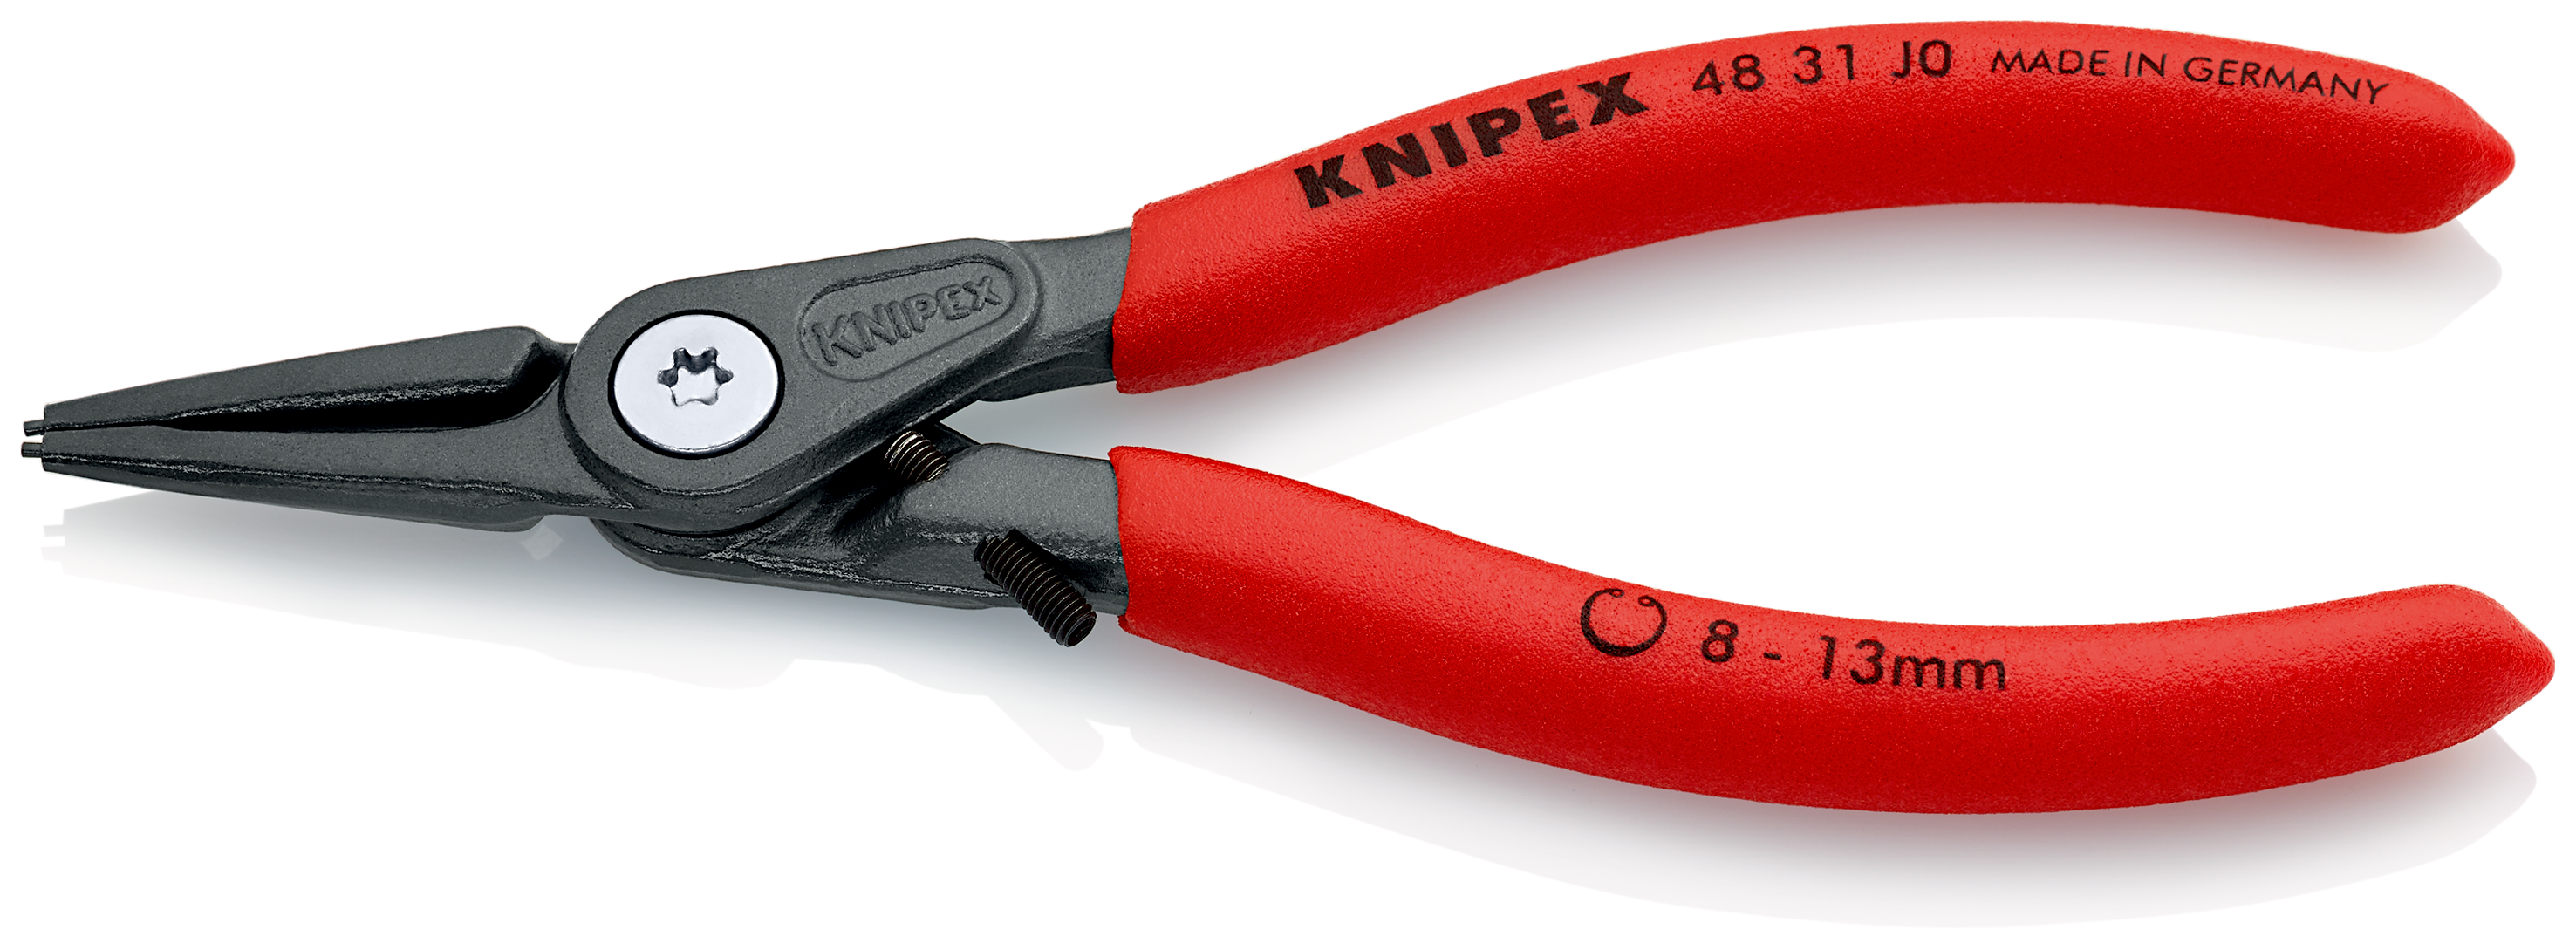 Knipex 4831J0 Cleste pentru inele de siguranță de interior cu protecţie la supraîntindere, lungime 140 mm